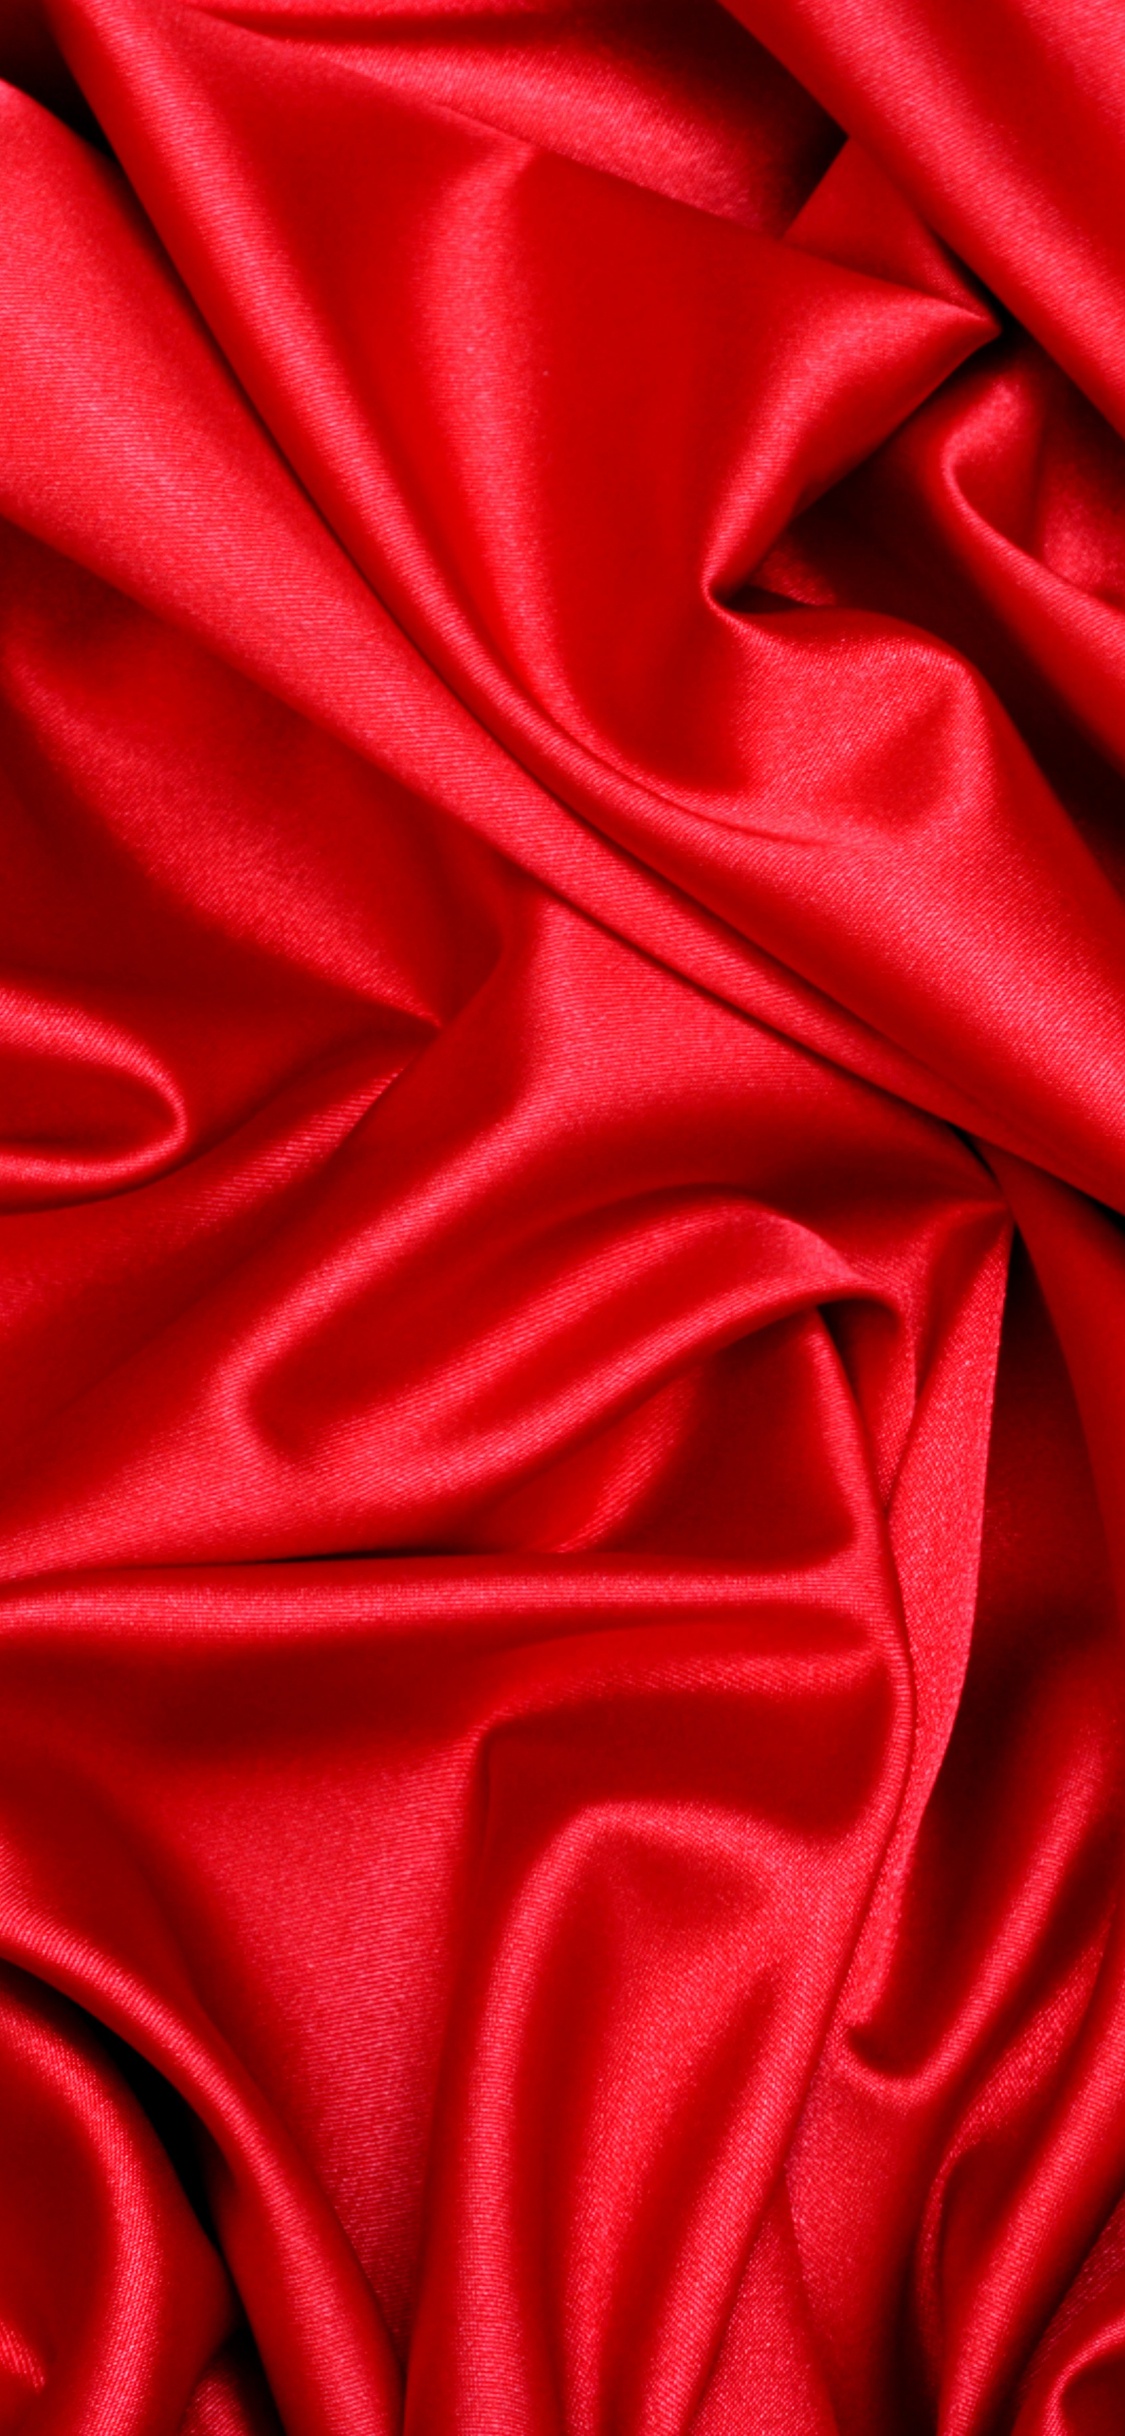 Textil Rojo en Fotografía de Cerca. Wallpaper in 1125x2436 Resolution